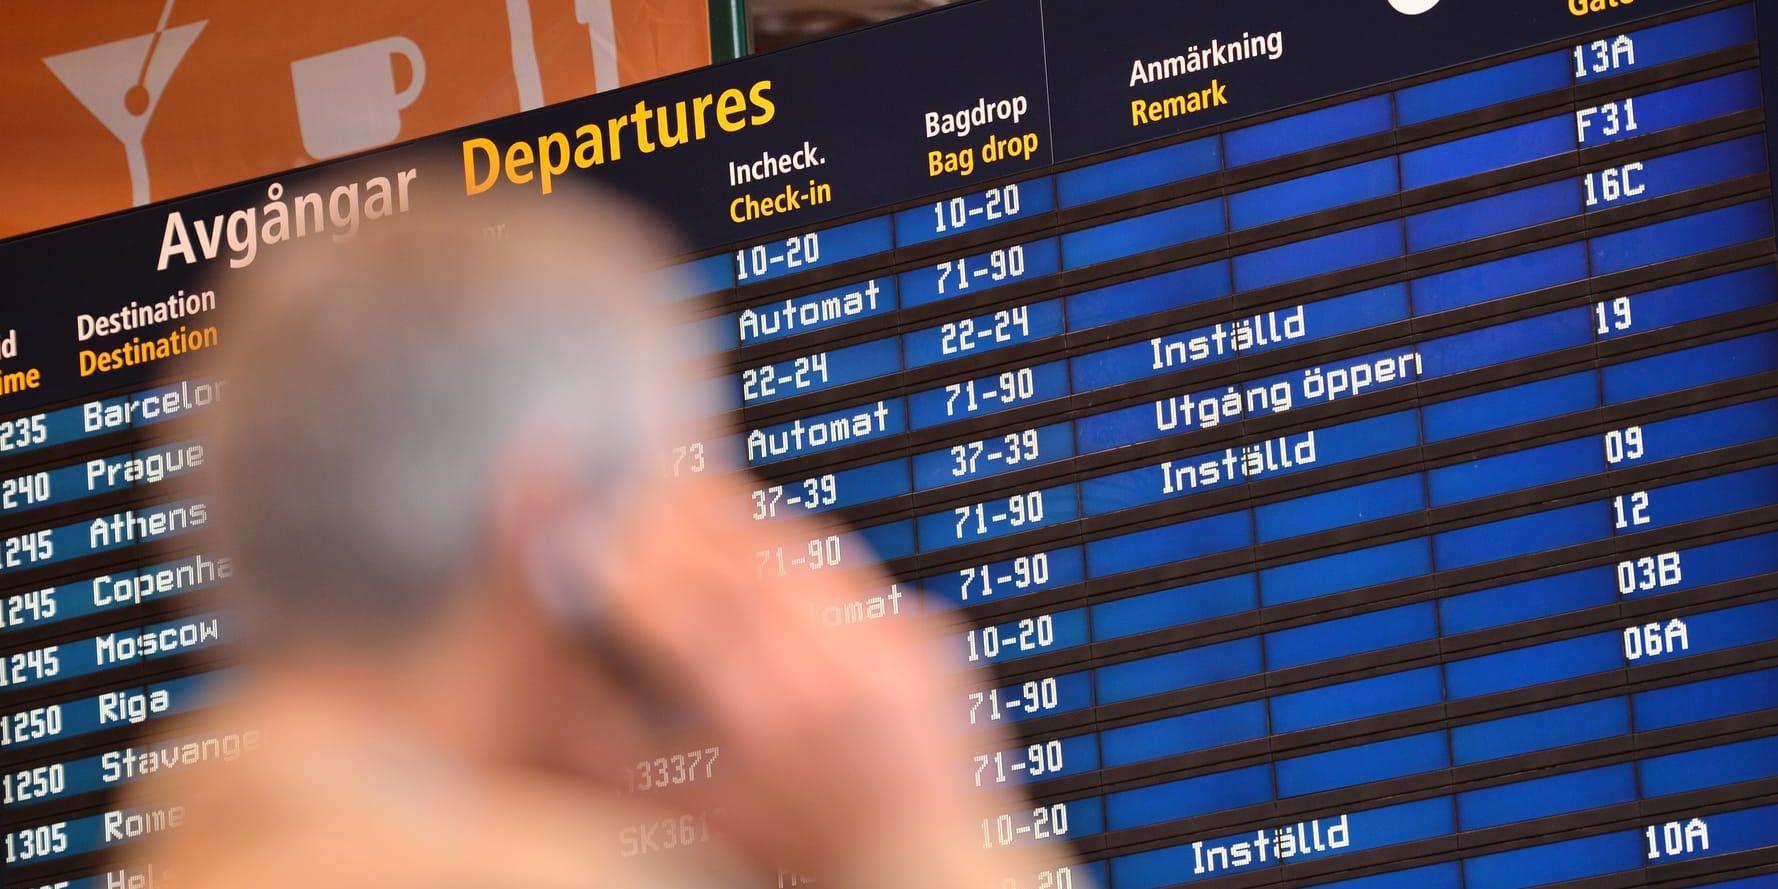 Inga flyg fick lyfta från Arlanda flygplats. Enligt Swedavia berodde stoppet på Arlanda på att Luftfartsverket hade problem i datakommunikationen. Arkivbild.